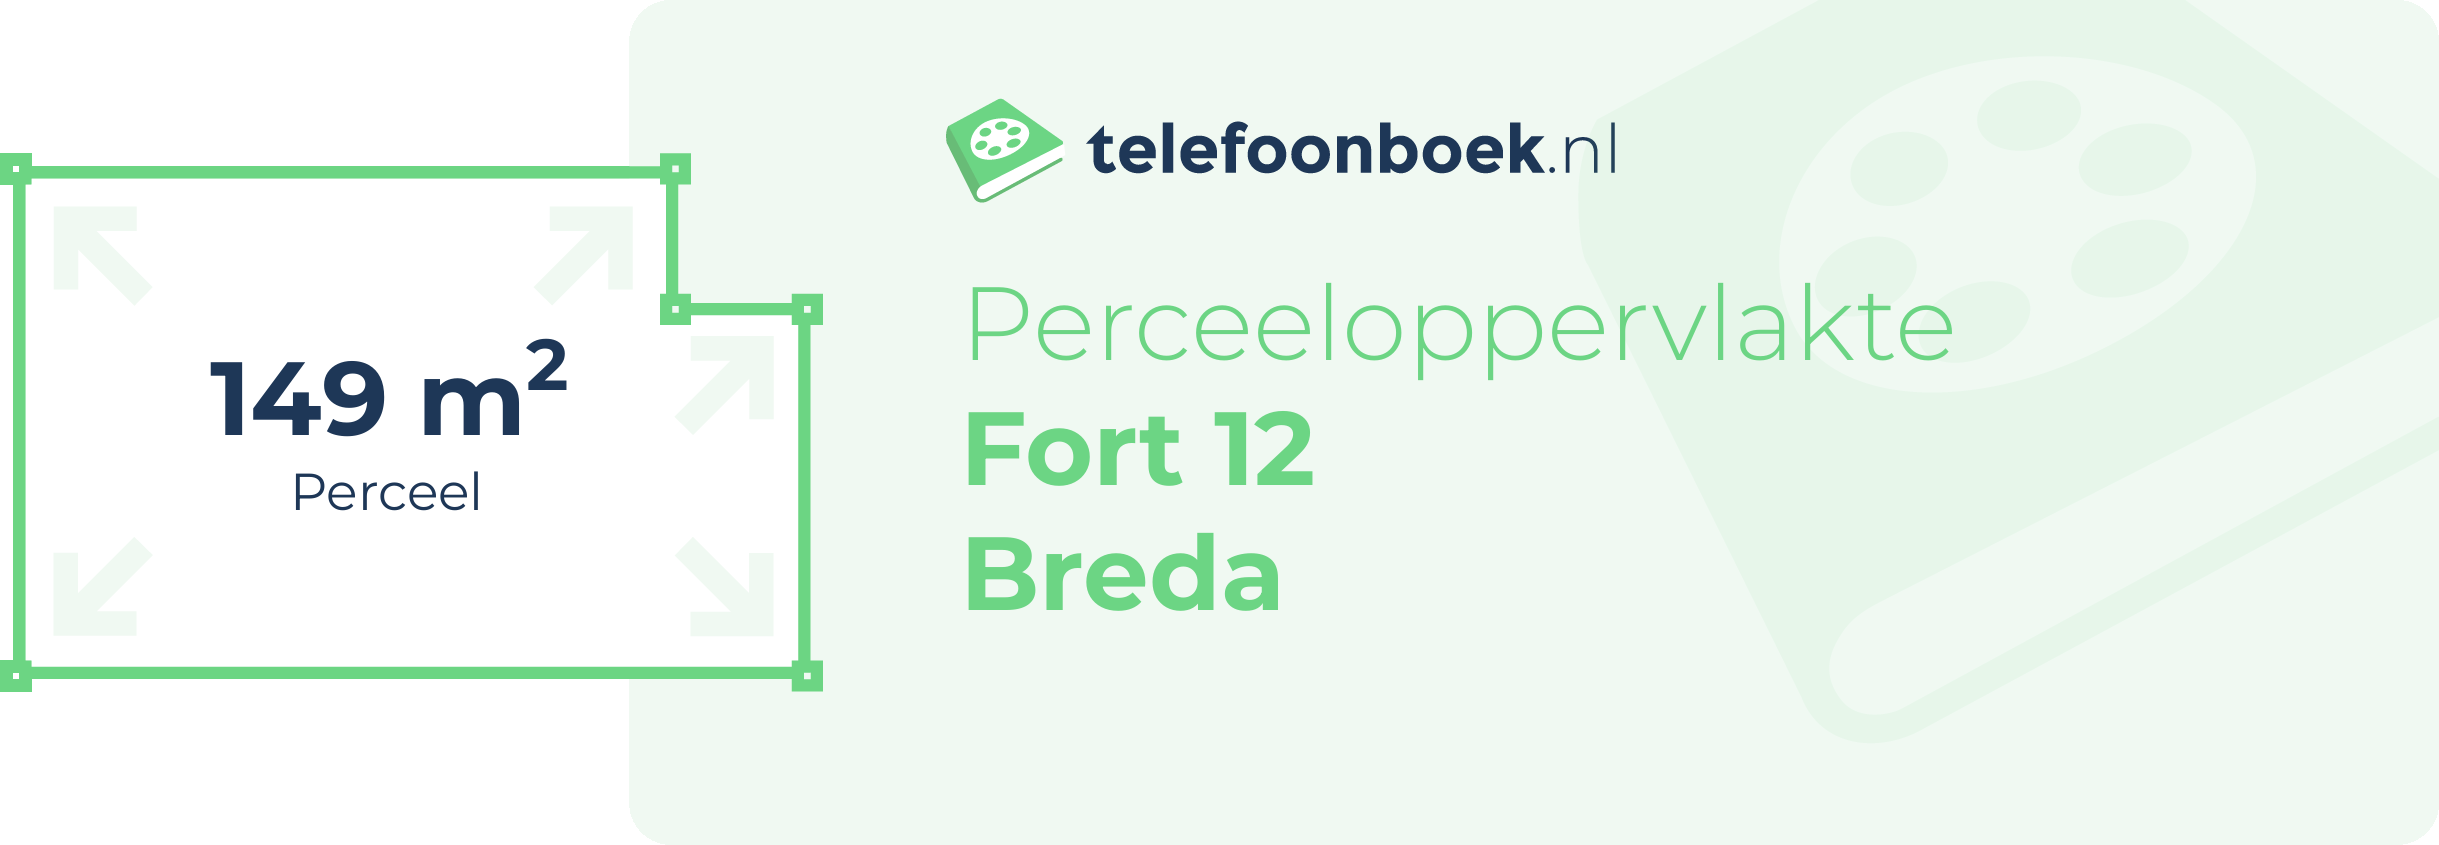 Perceeloppervlakte Fort 12 Breda